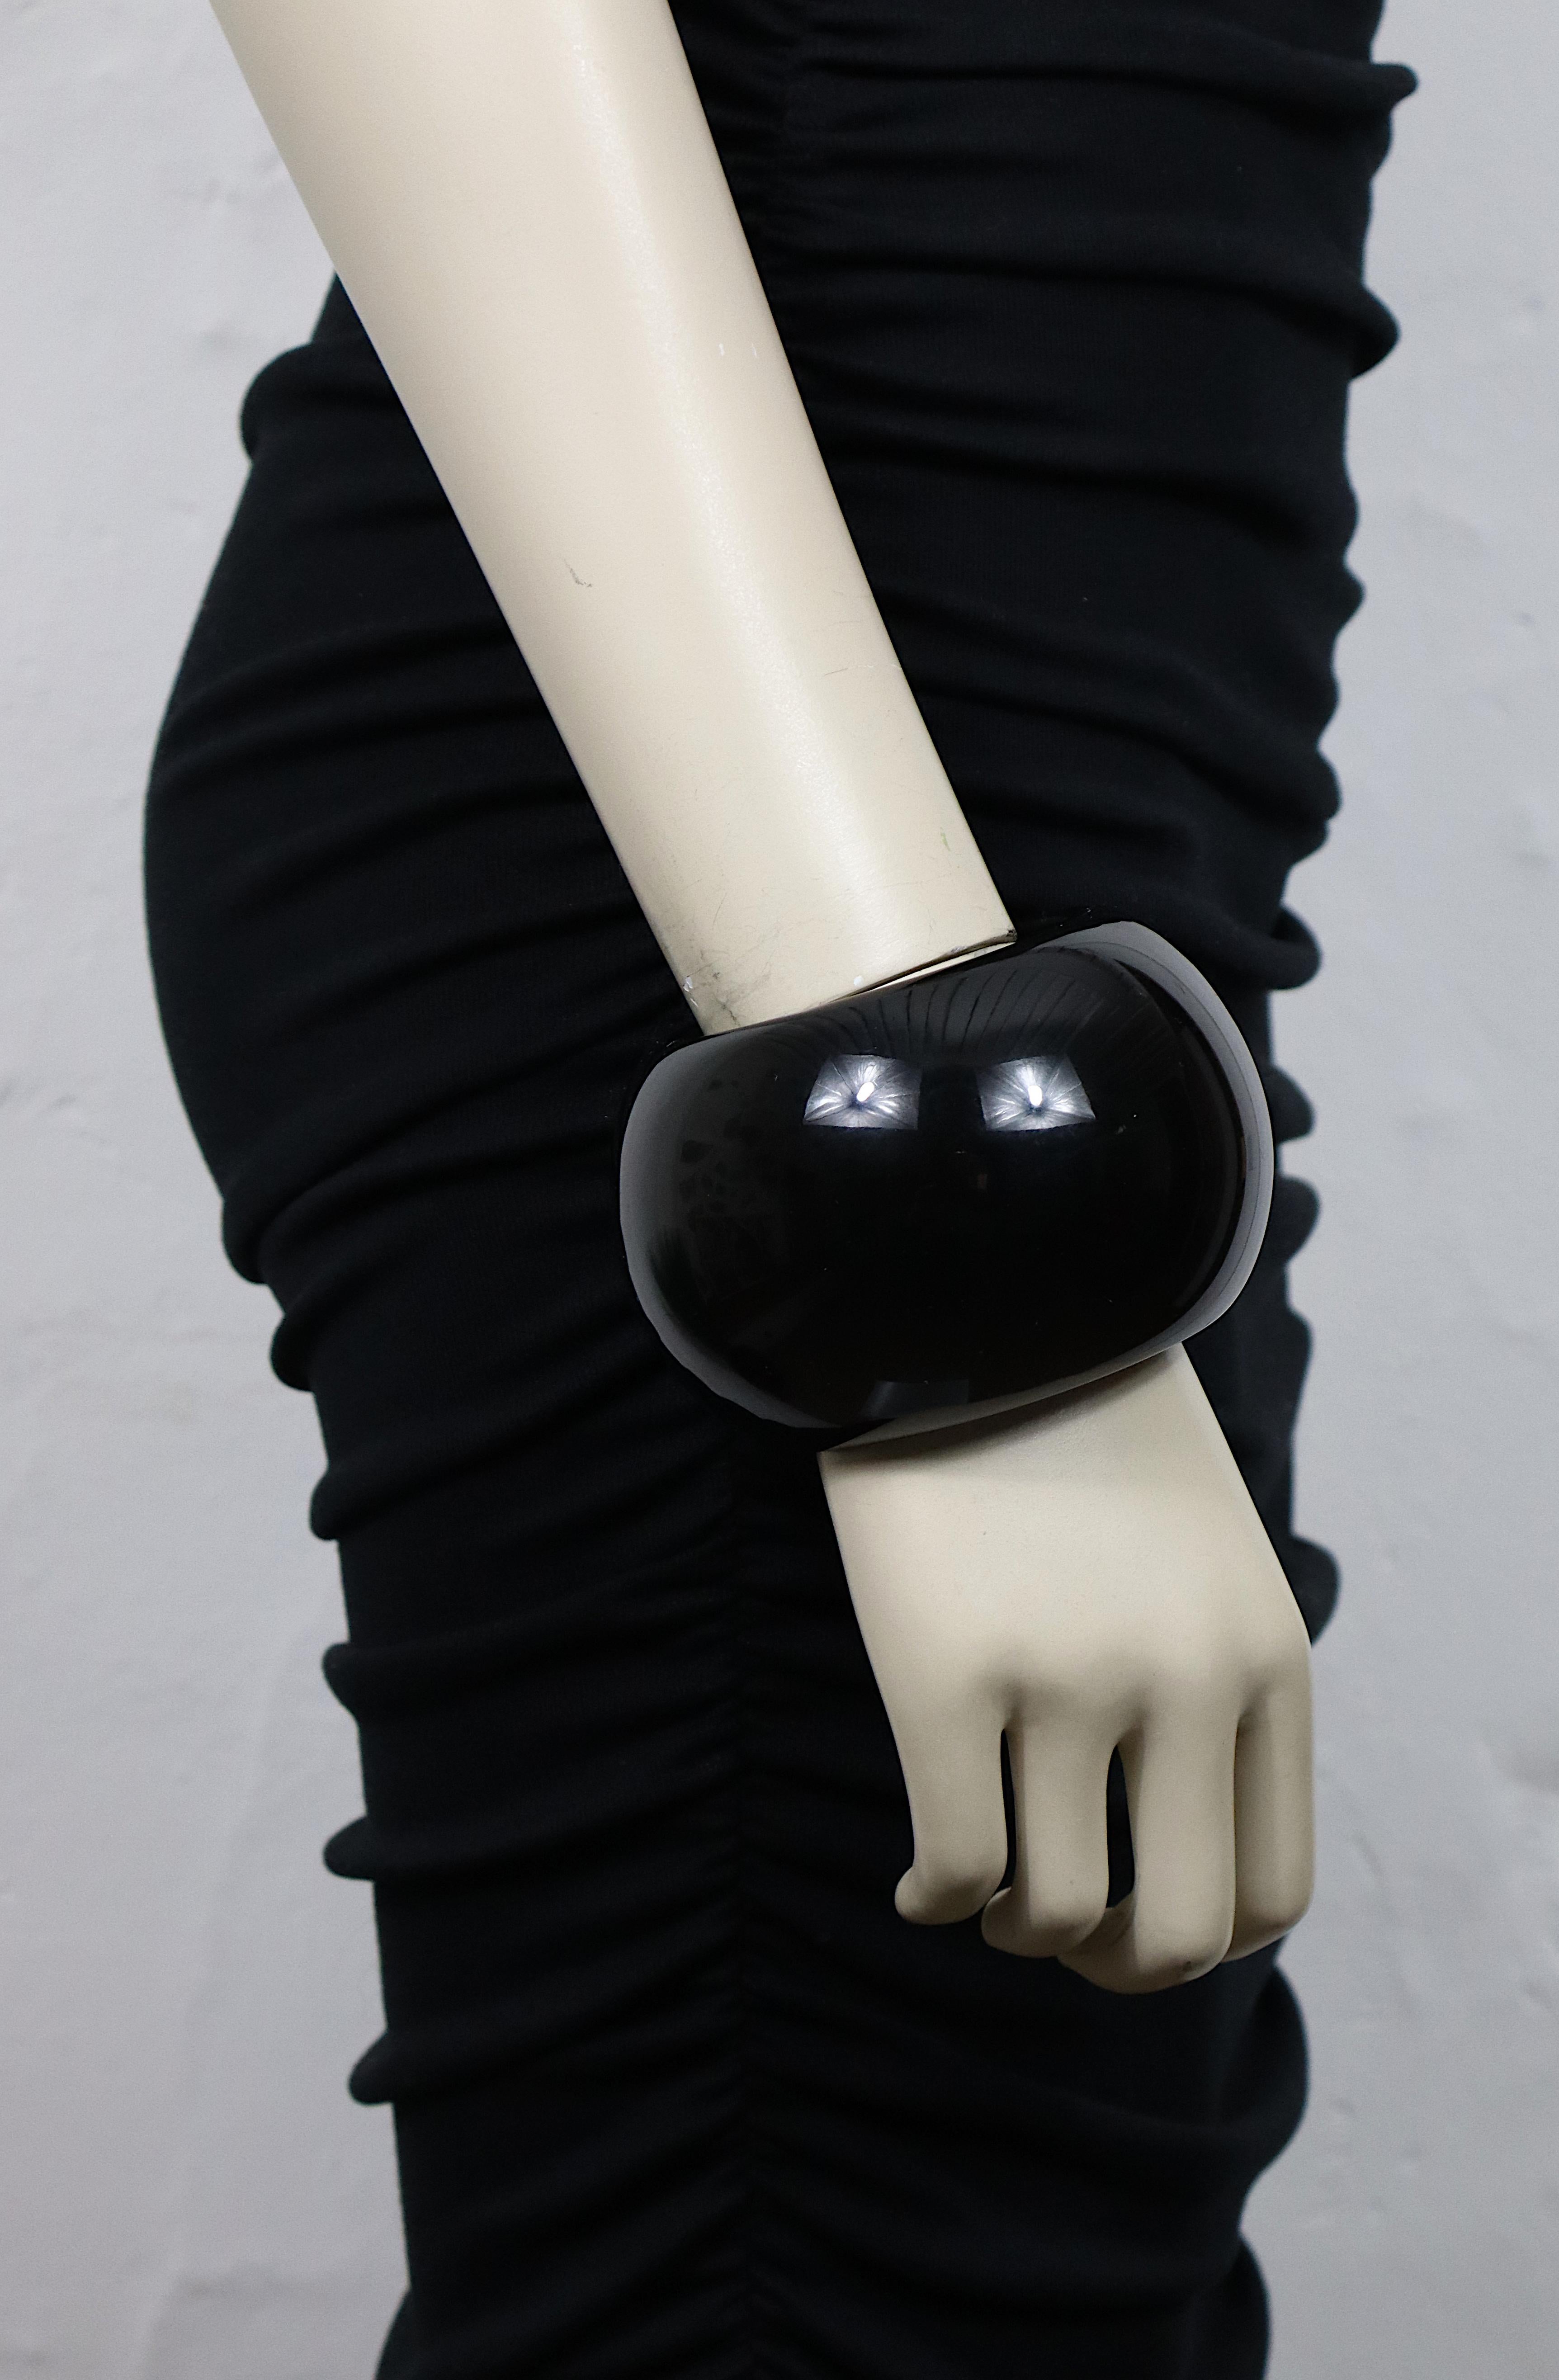 Bracelet manchette surdimensionné en résine noire d'Yves SAINT LAURENT.

Embossé YVES SAINT LAURENT.

Il a du poids.

Mesures indicatives : circonférence intérieure environ 20,73 cm (8,16 pouces) / largeur environ 6,5 cm (2,56 pouces).

Matériau :